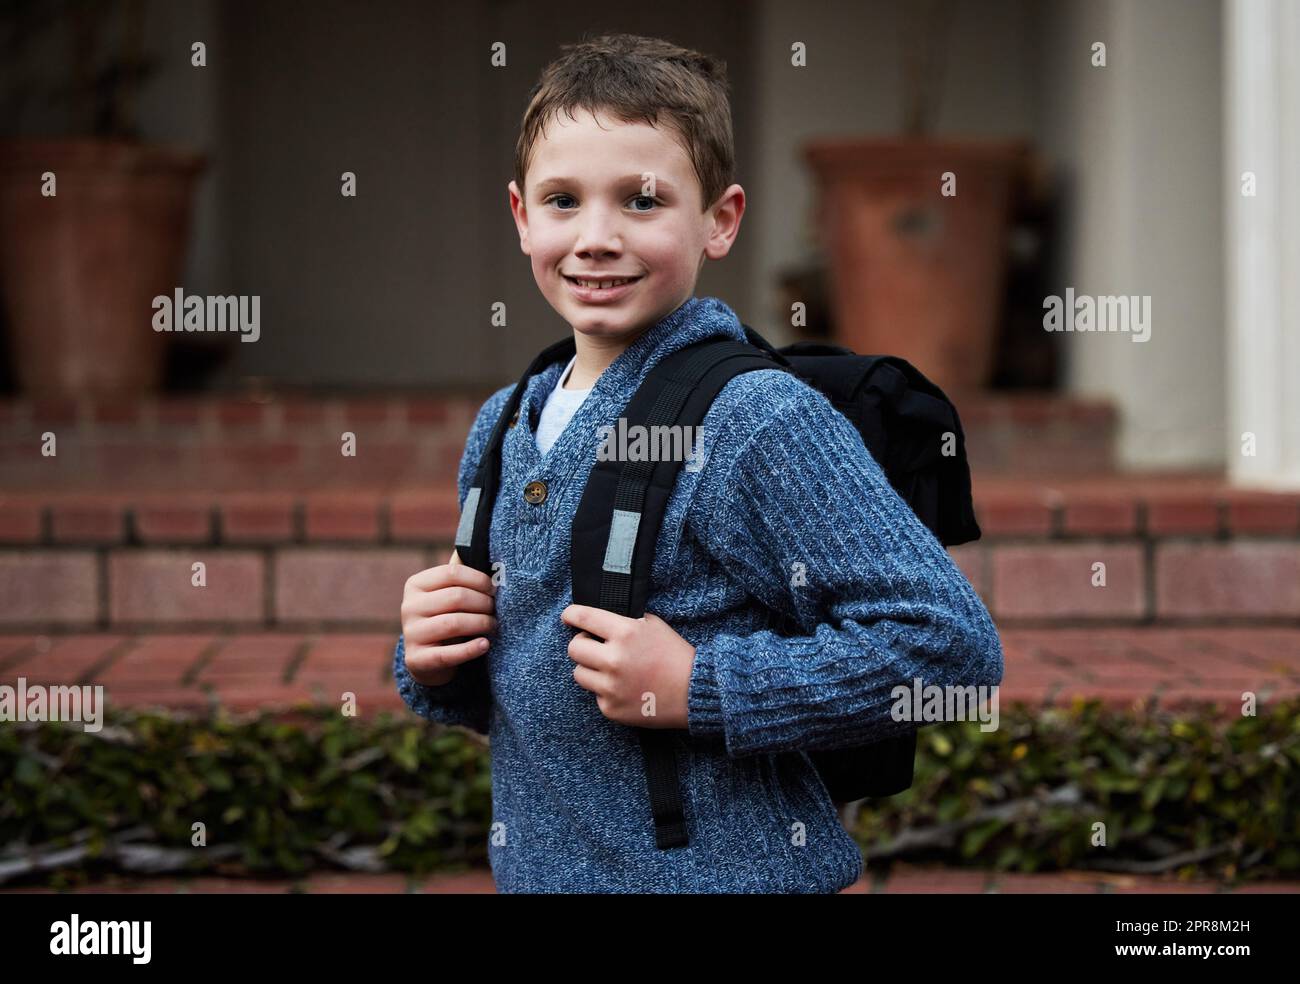 Bereit, neue Freunde zu finden. Ein kleiner Junge, der sich bereit macht, zur Schule zu gehen. Stockfoto